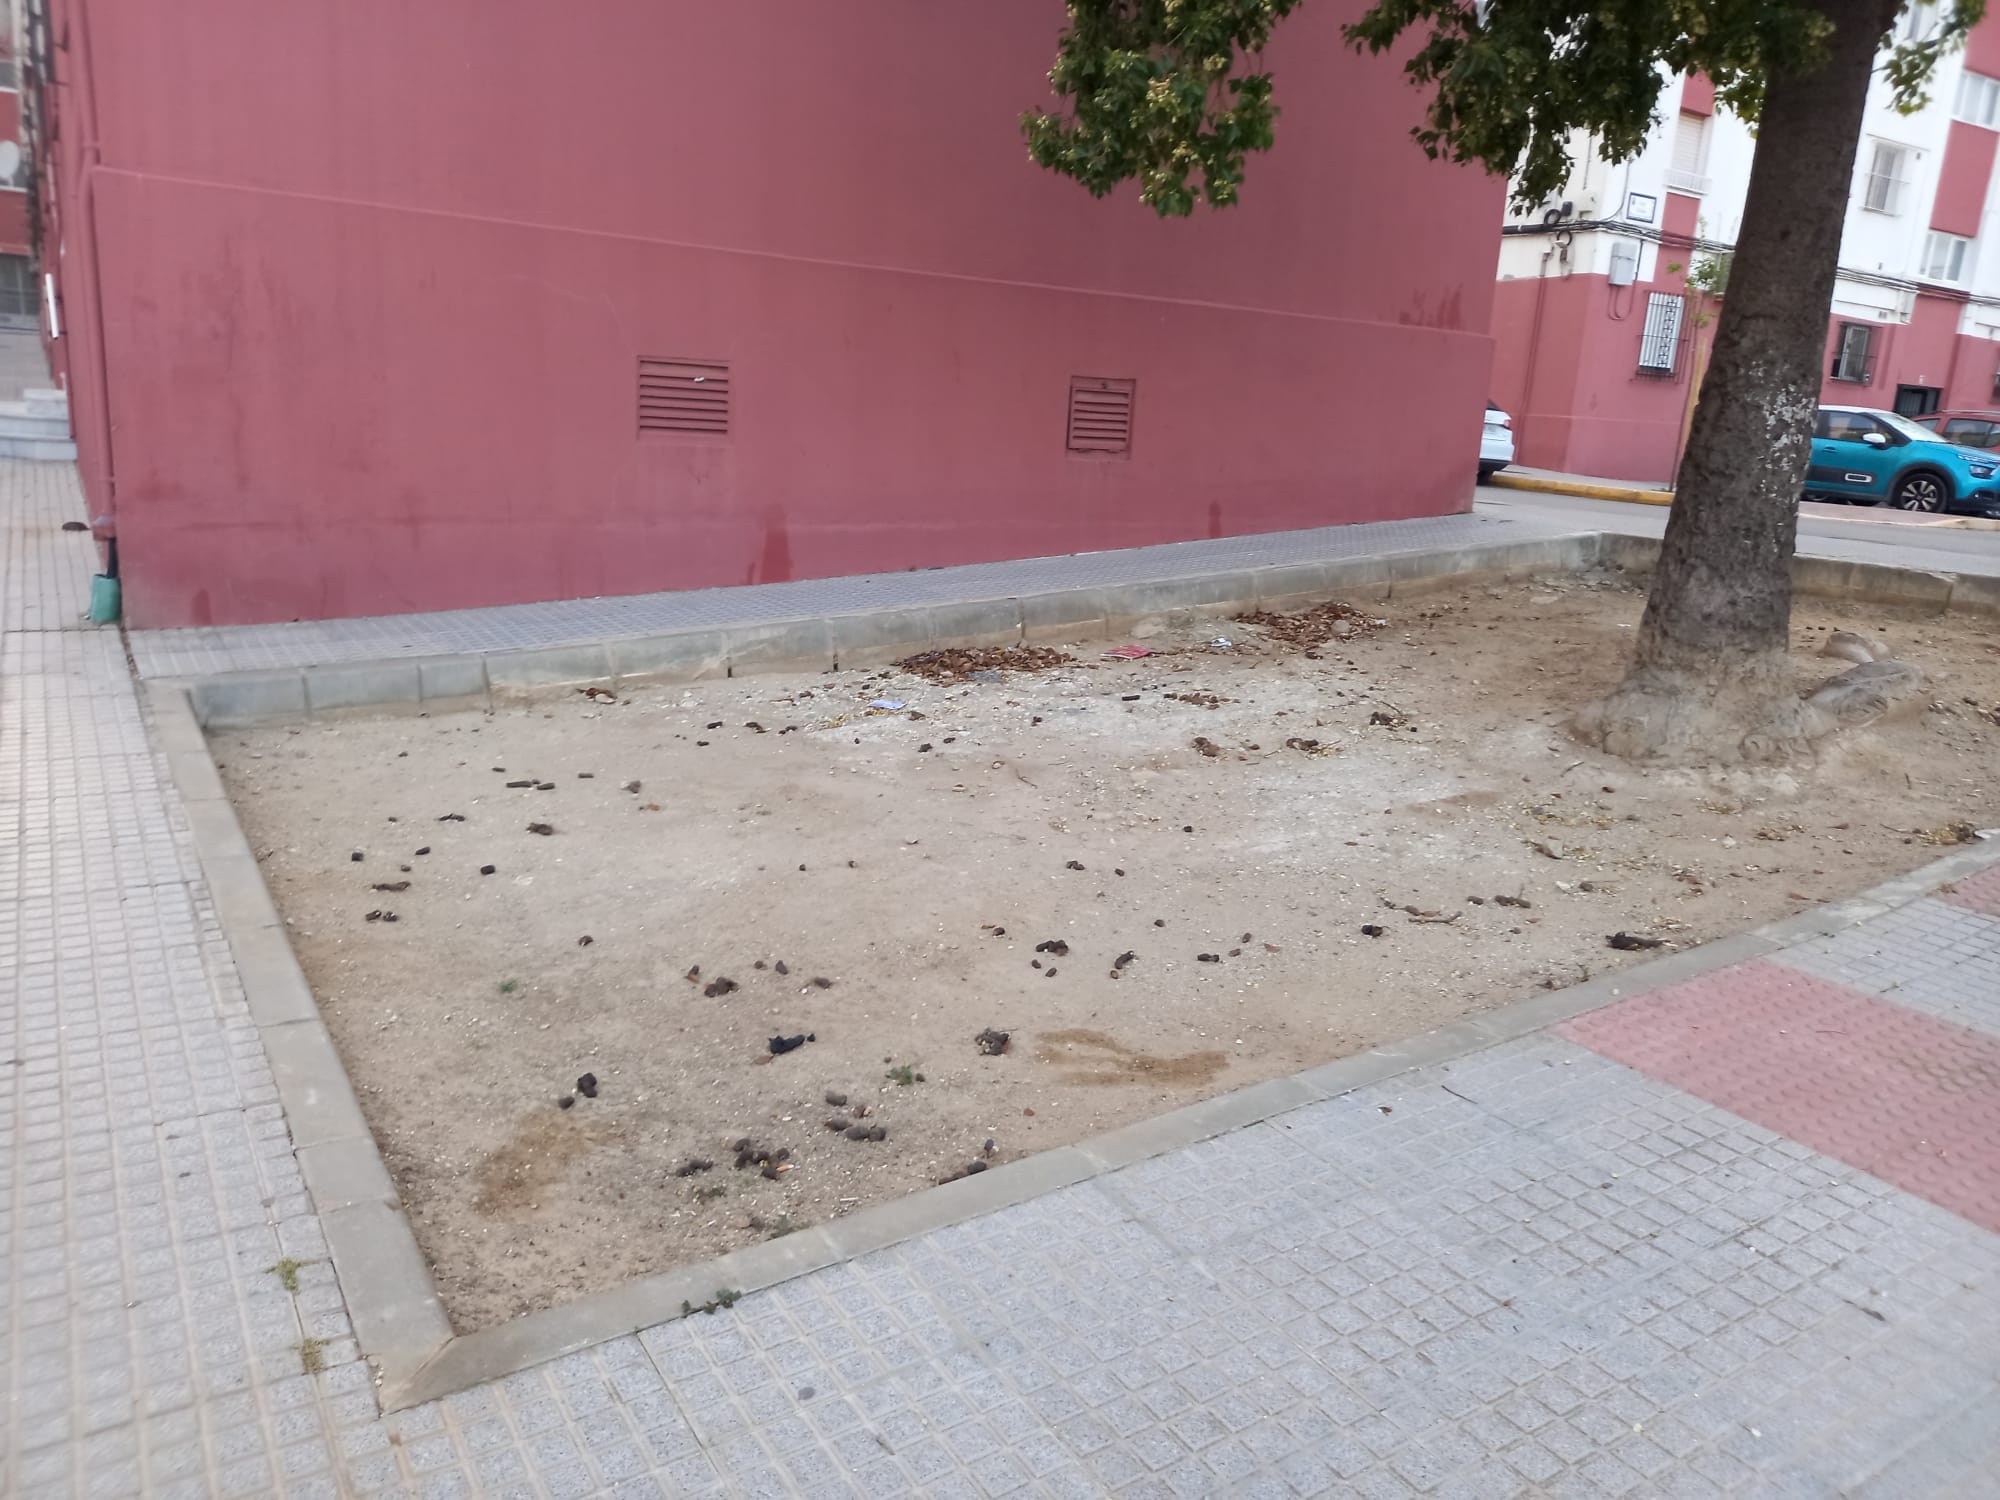 Terreno repleto de heces de perros junto a un bloque, el 'cagadero' de mascotas en Chiclana.